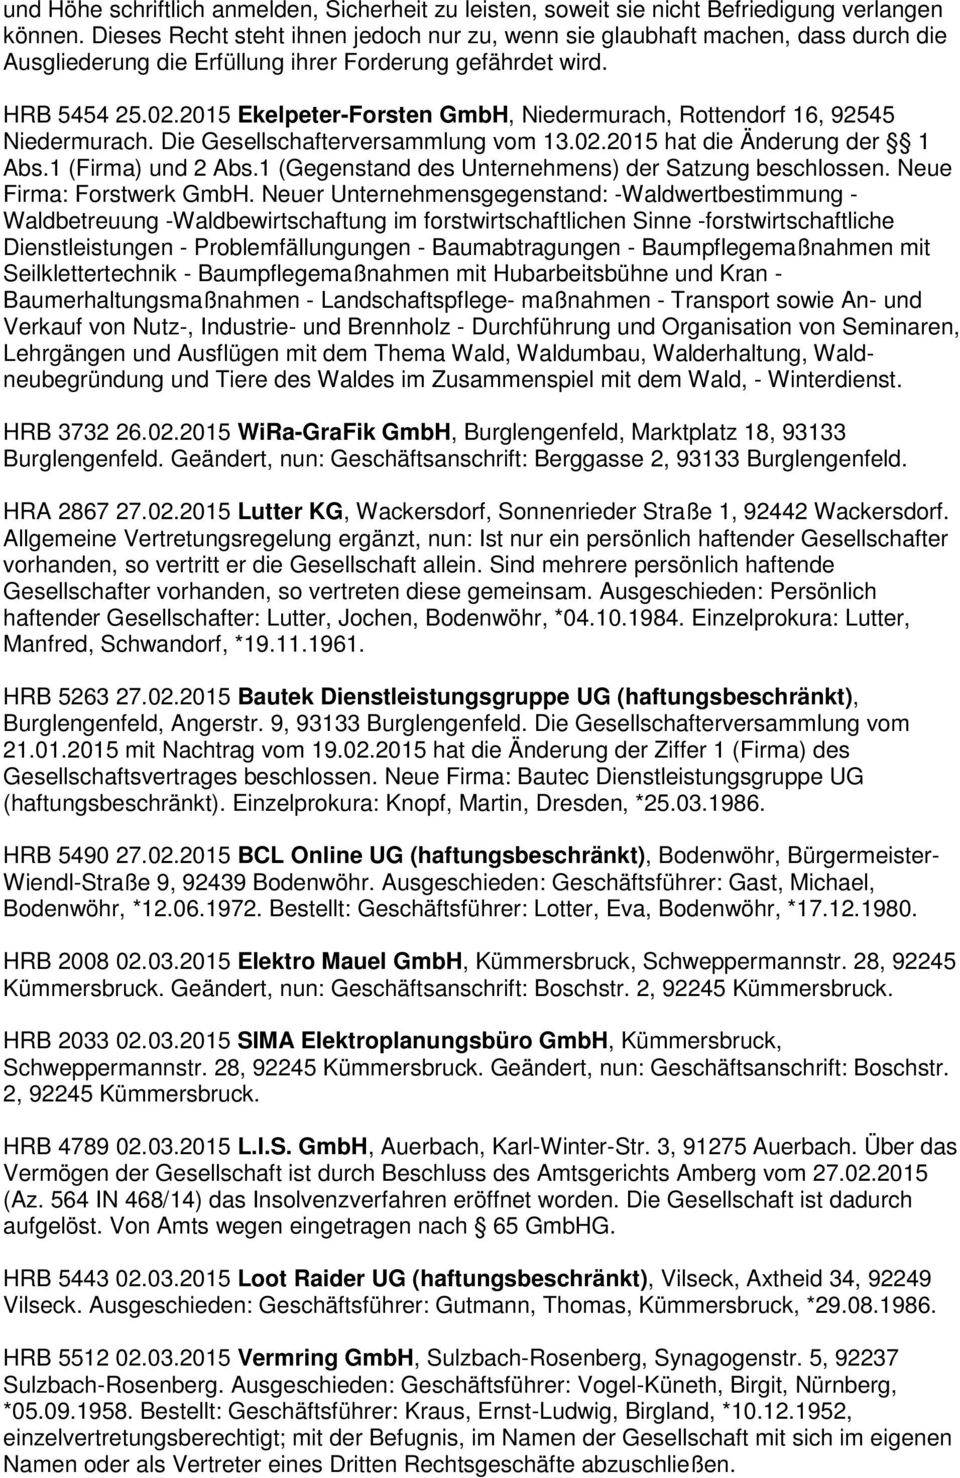 2015 Ekelpeter-Forsten GmbH, Niedermurach, Rottendorf 16, 92545 Niedermurach. Die Gesellschafterversammlung vom 13.02.2015 hat die Änderung der 1 Abs.1 (Firma) und 2 Abs.